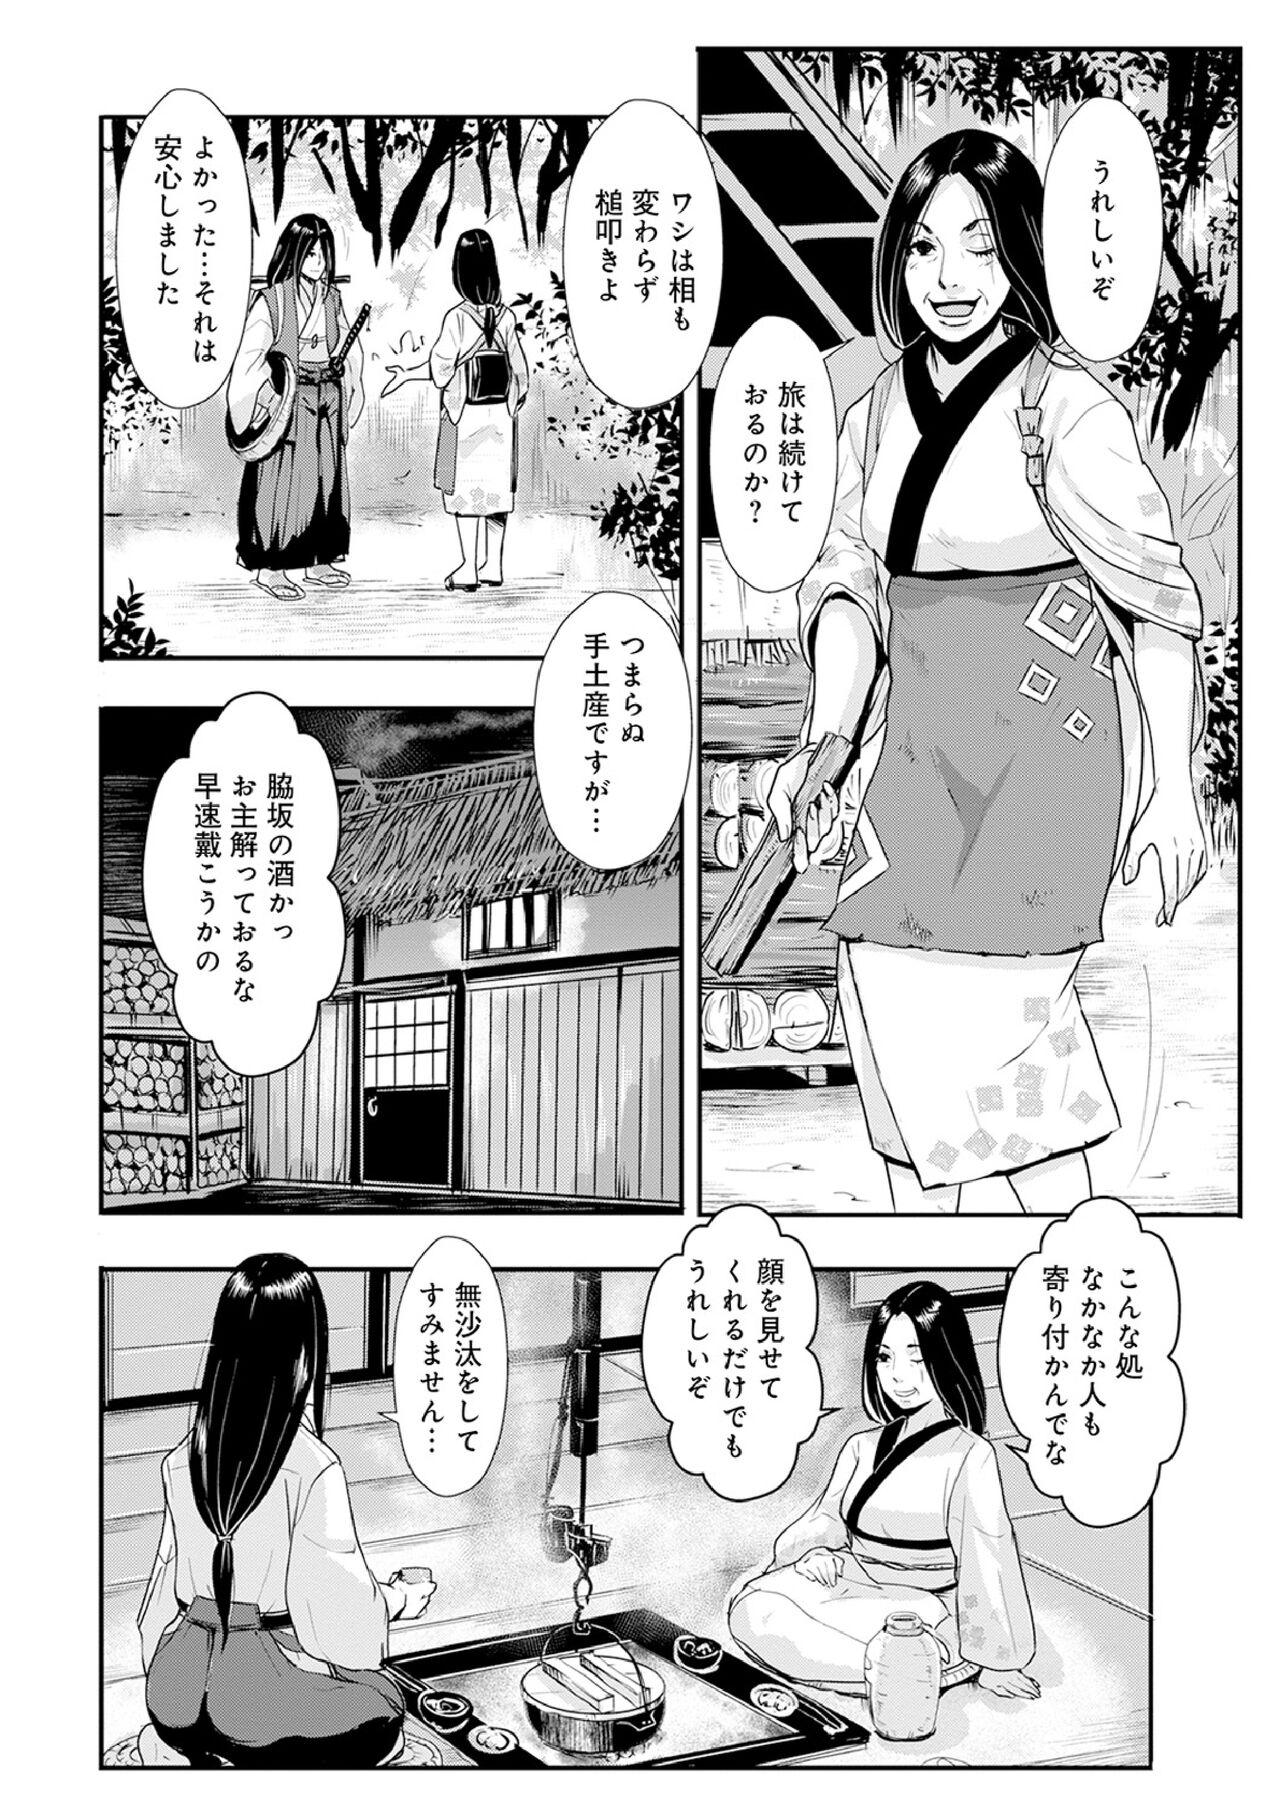 Scene Harami samurai 12 Leggings - Page 4